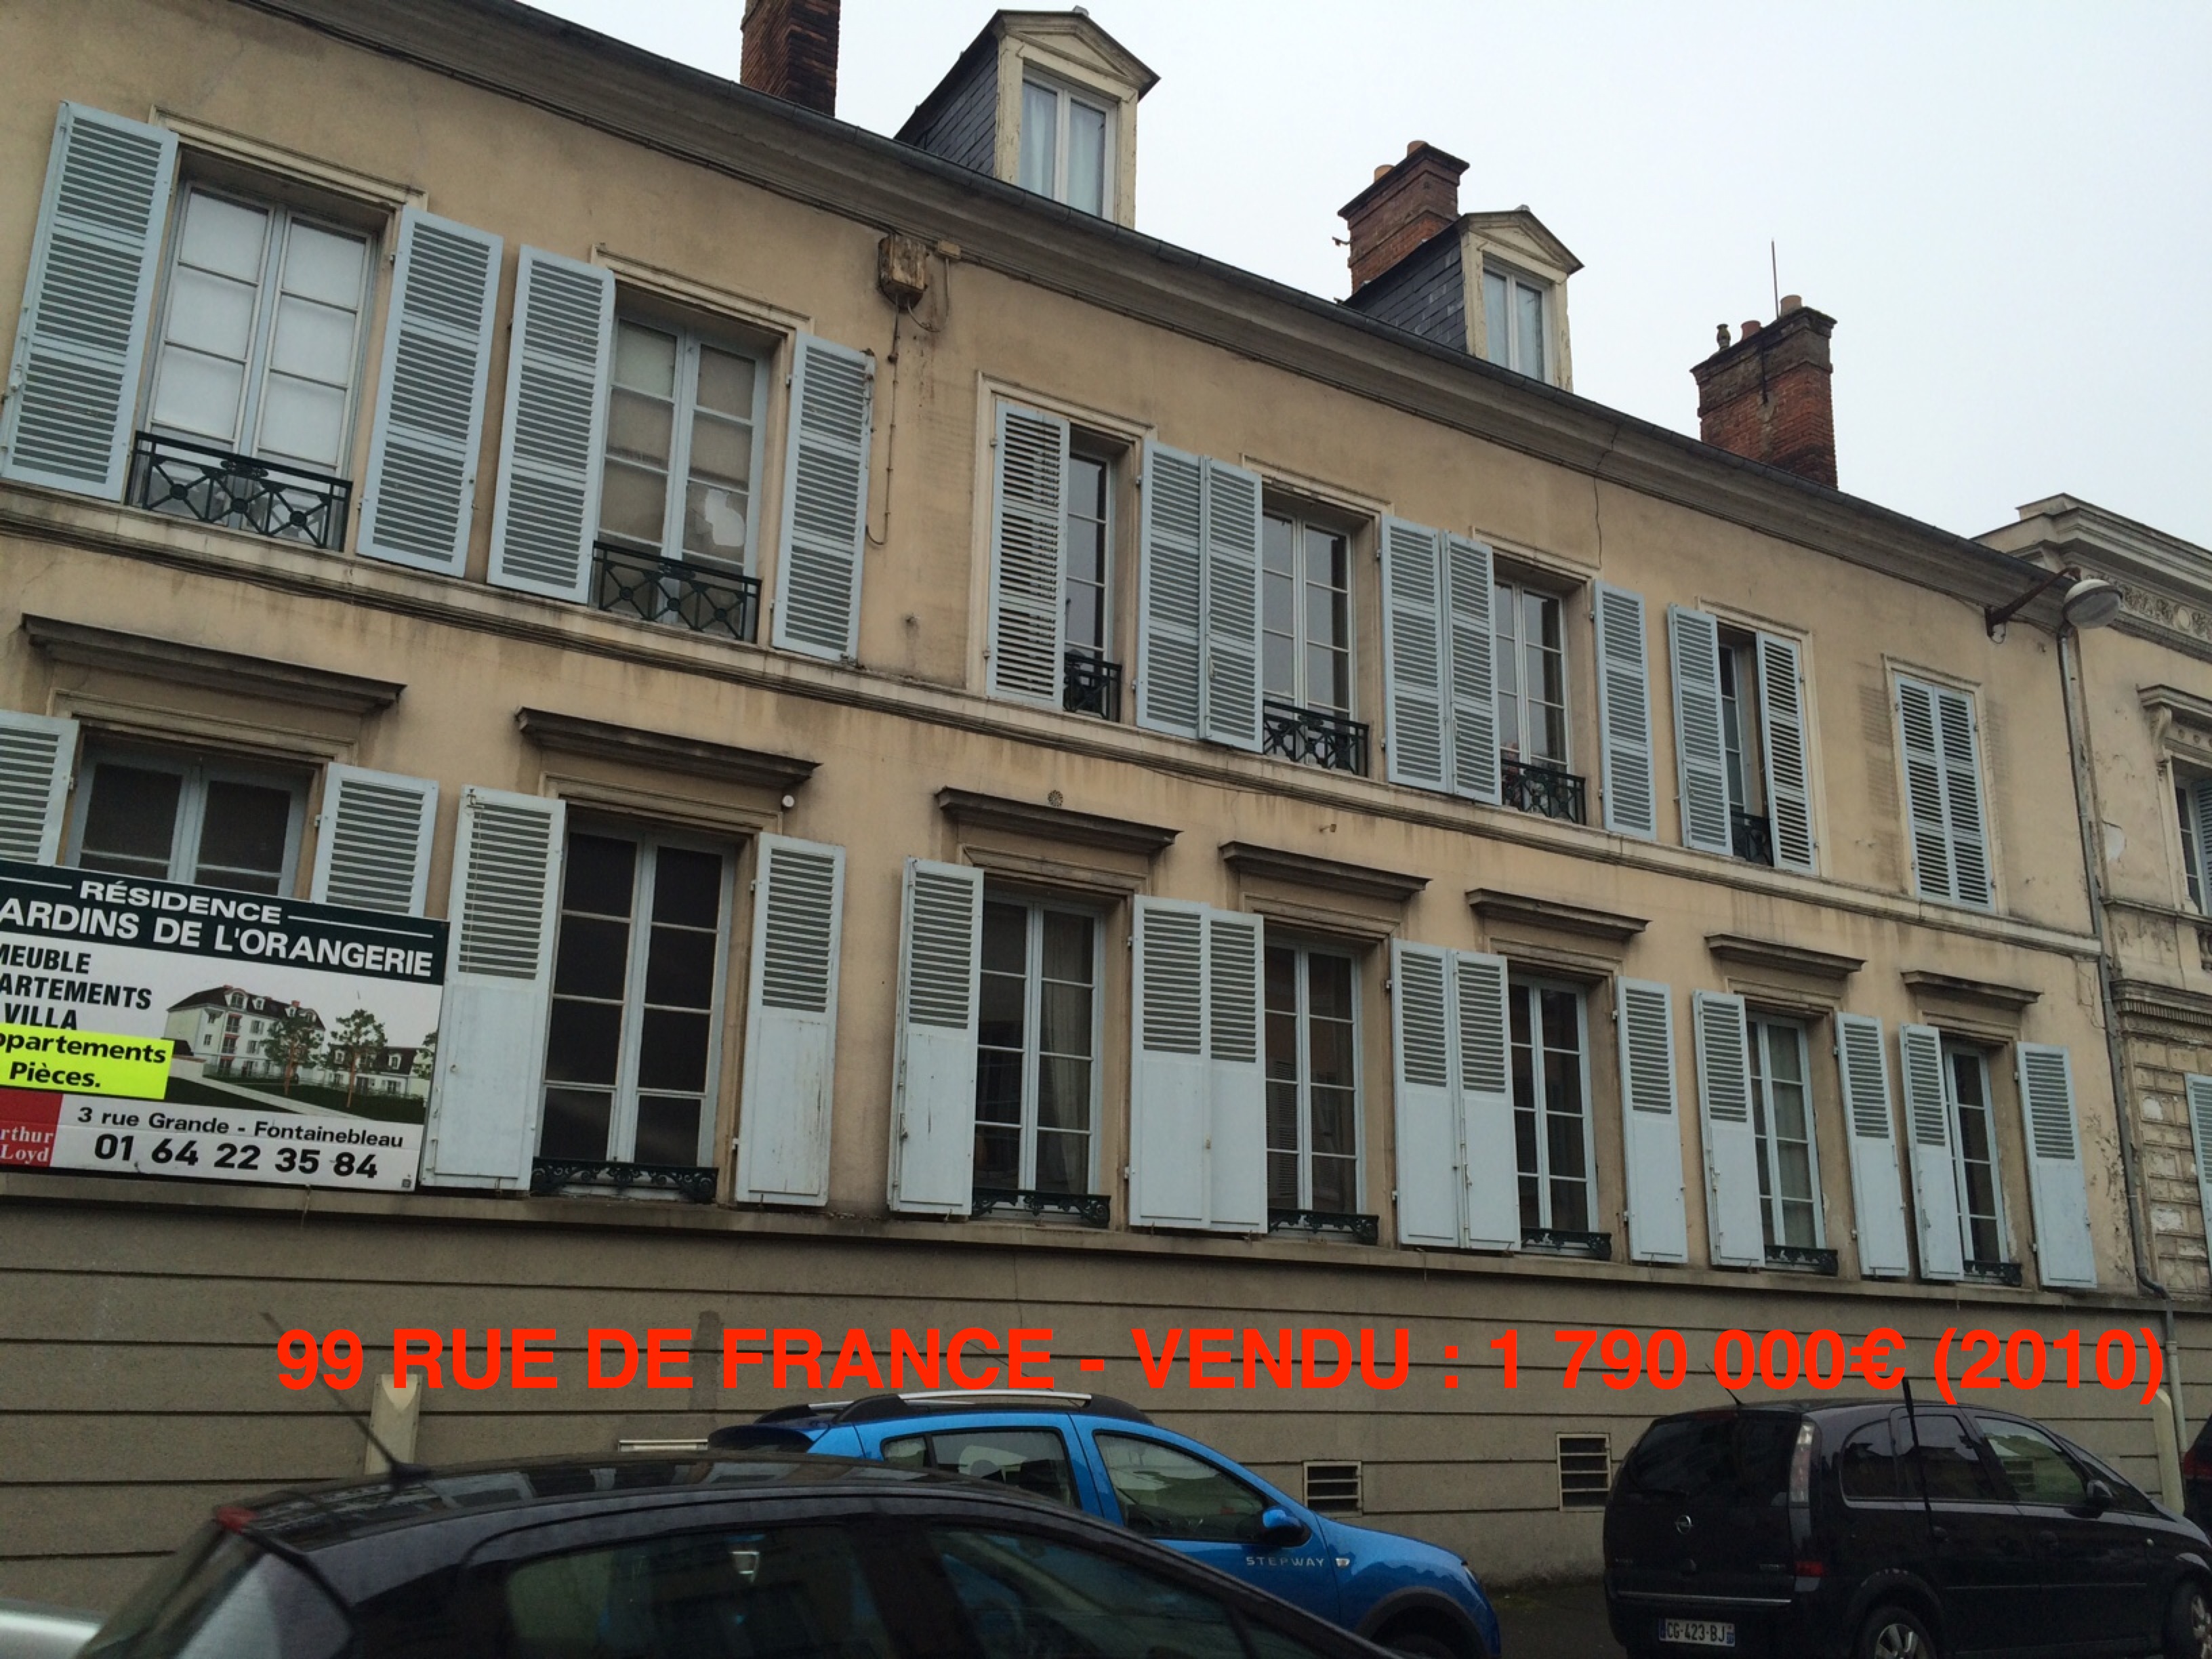 99 rue de France-1790000